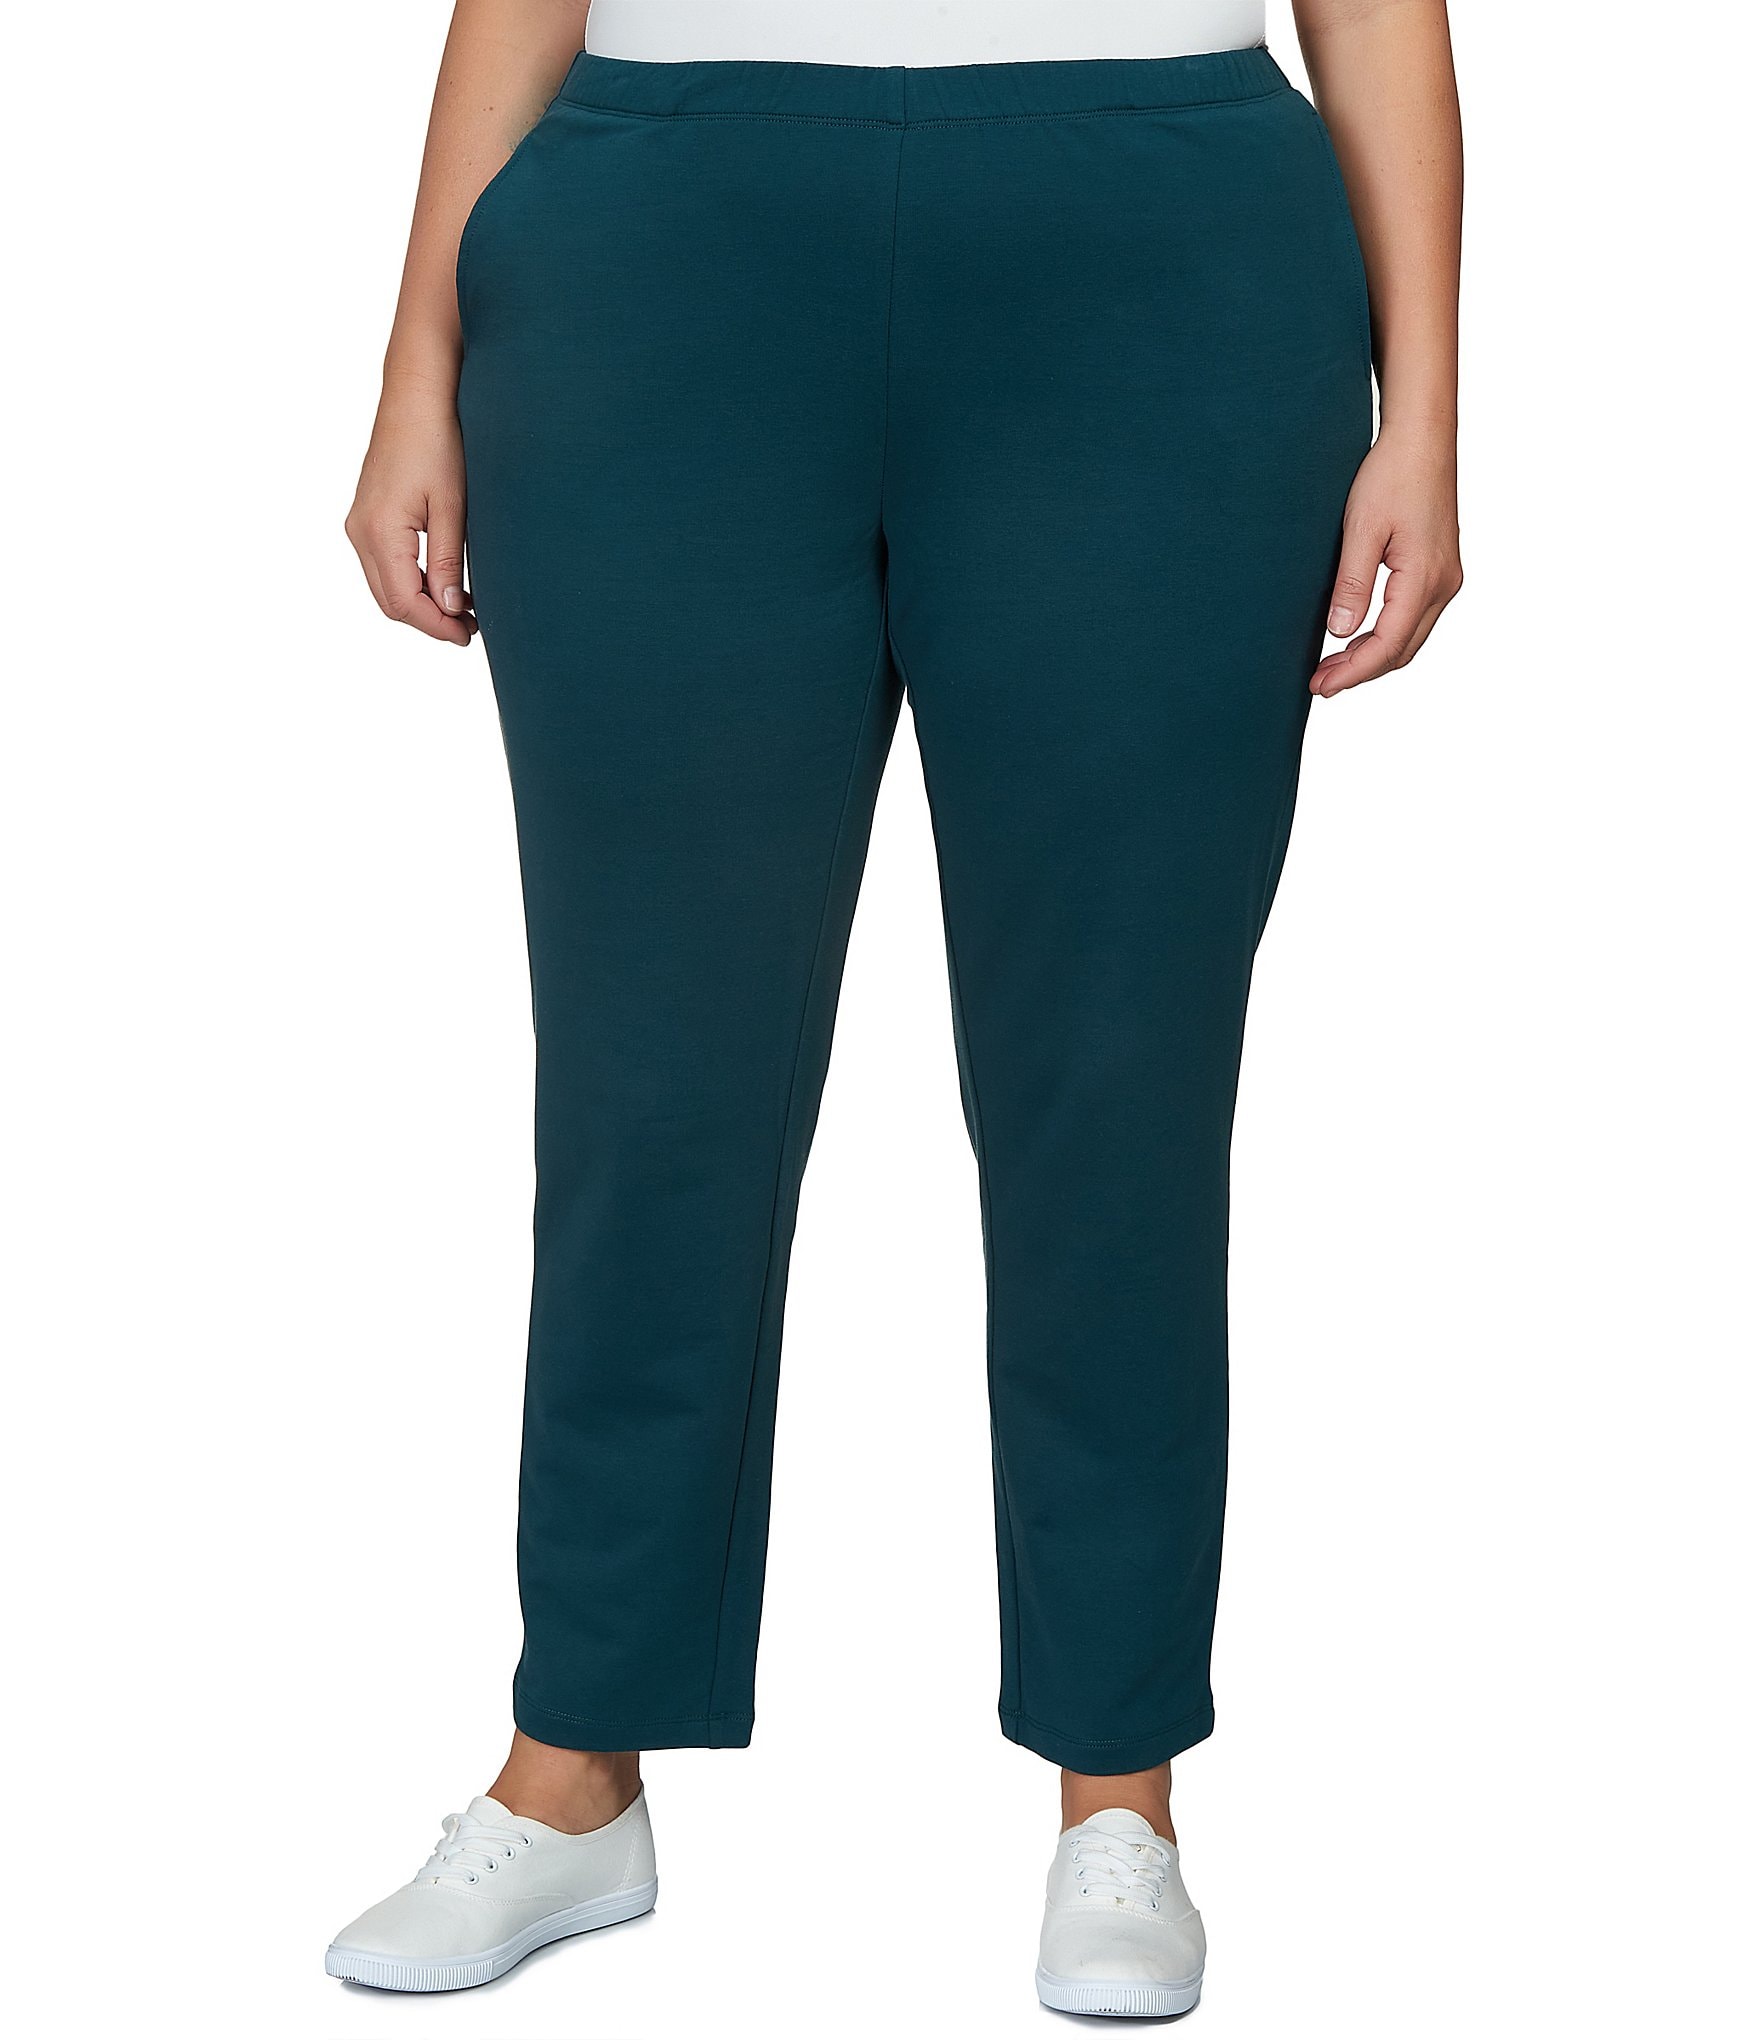 Pantalon Cargo Para Mujer Pants 4476